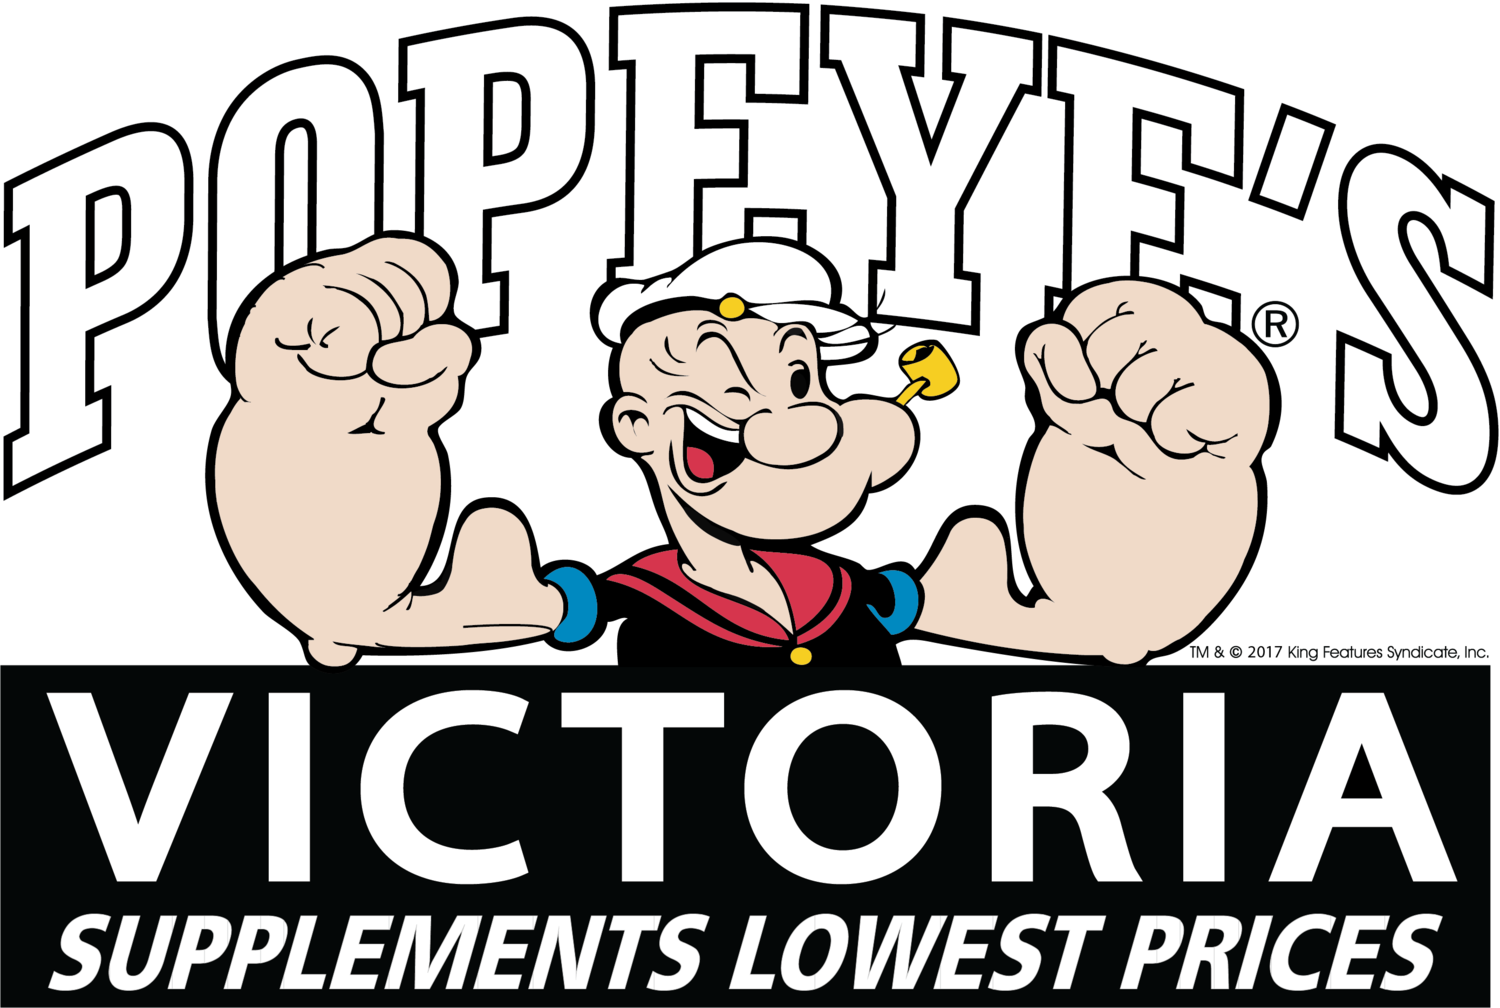 Popeye's Supplements Victoria